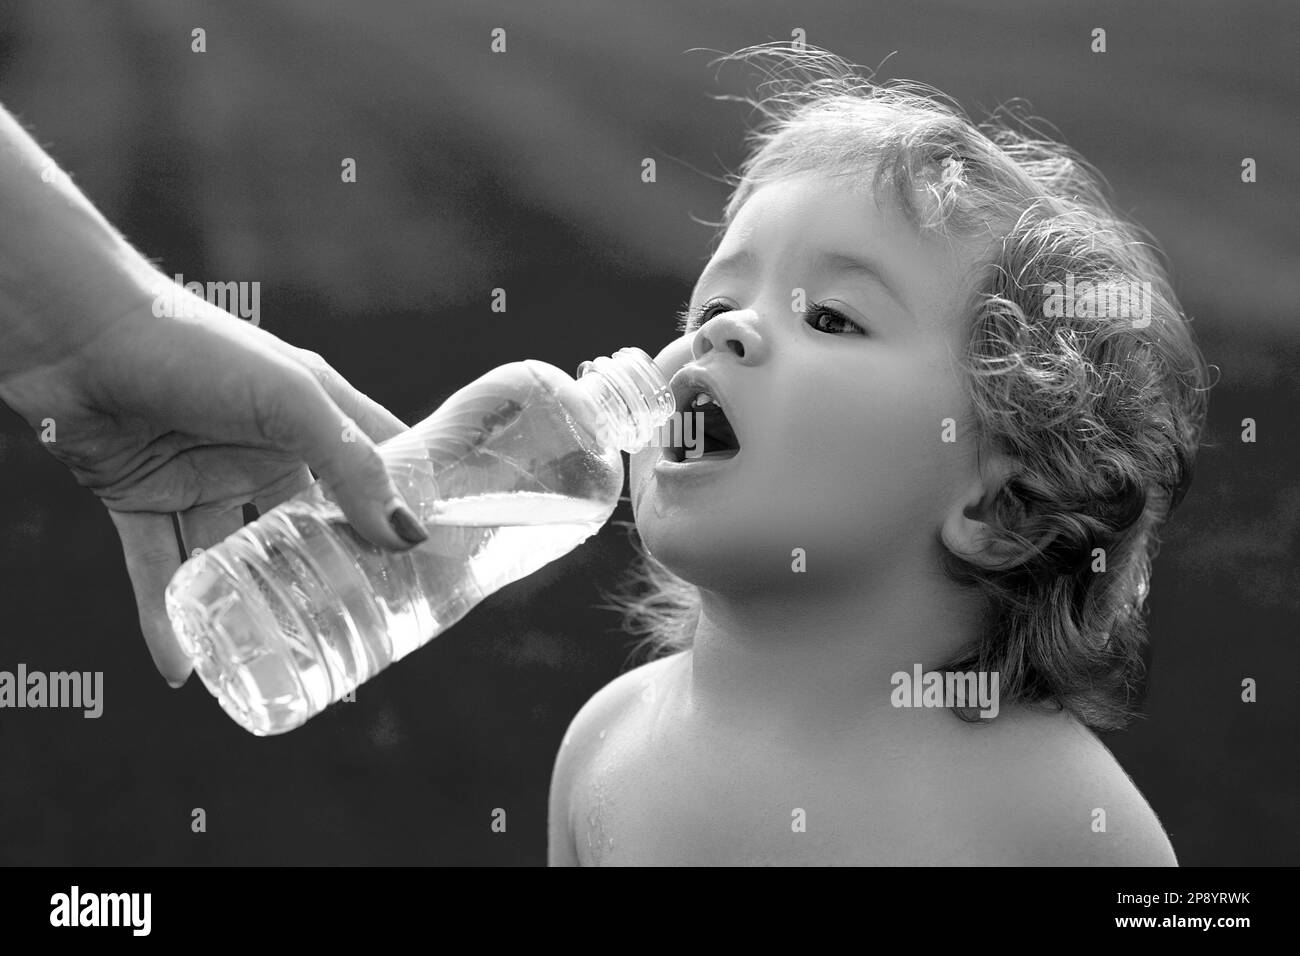 Bébé boit de l'eau des mains de la mère.L'enfant boit de l'eau dans une bouteille tout en marchant sur le terrain d'herbe, santé de bébé.La mère donne une bouteille à l'enfant Banque D'Images